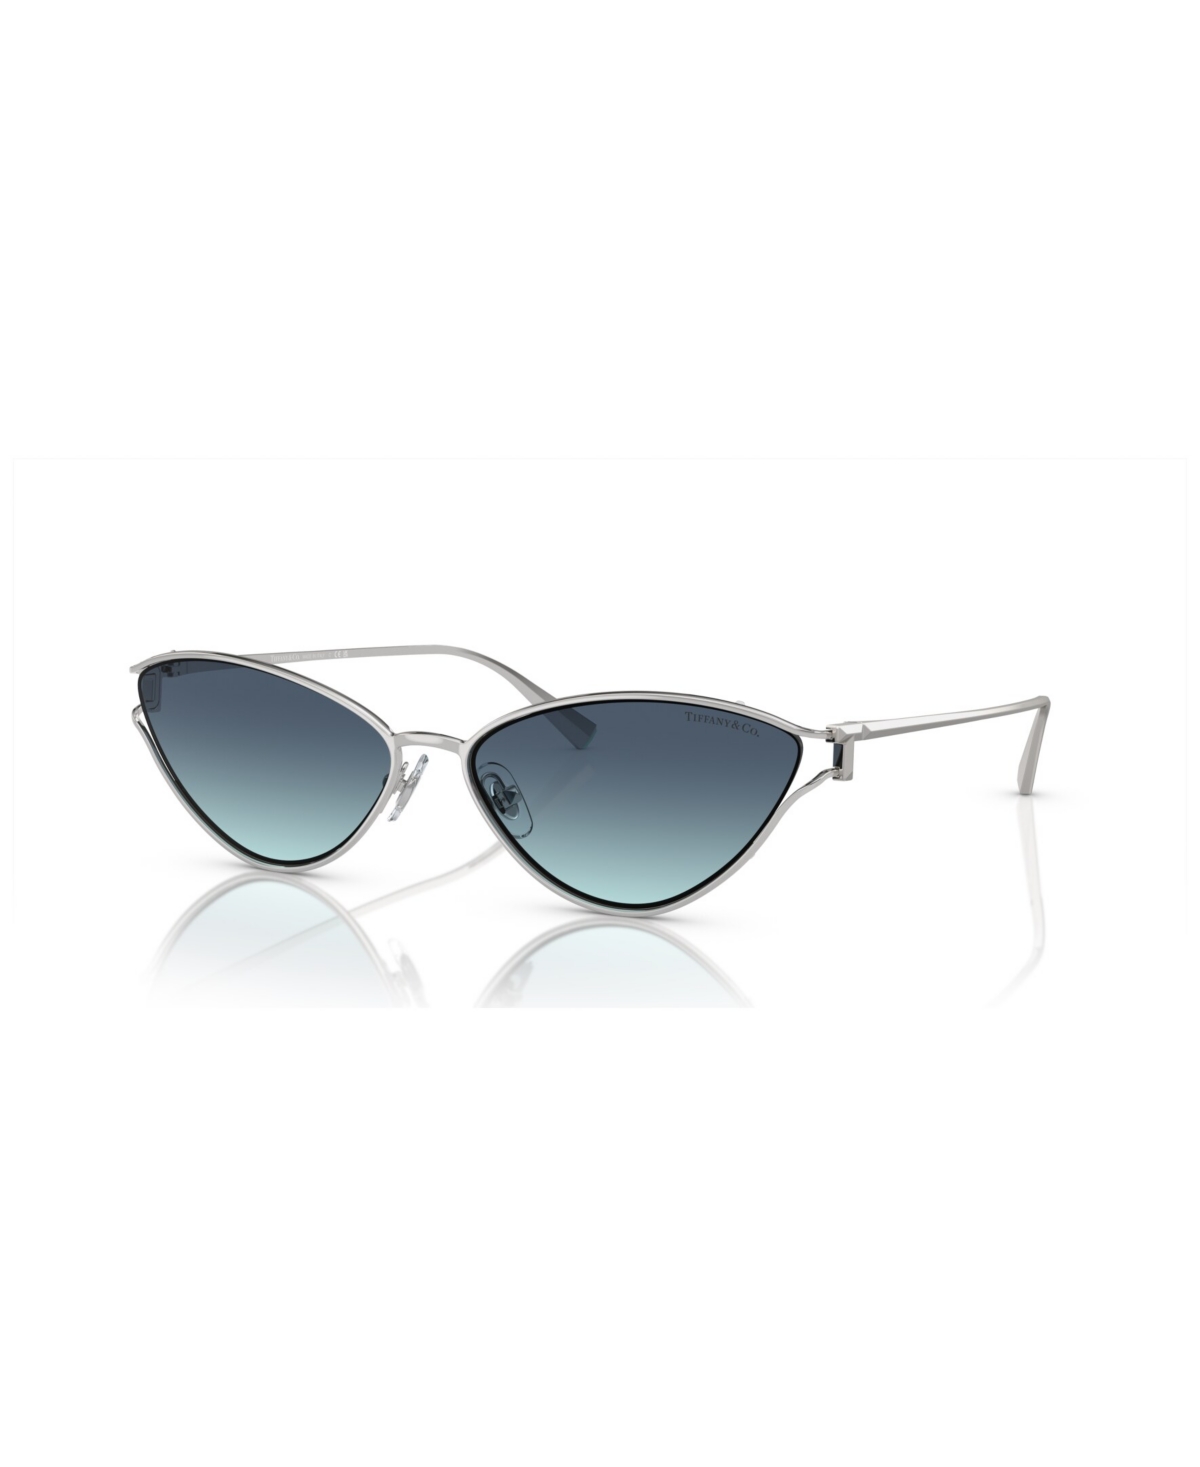 Tiffany & Co Women's Sunglasses, Gradient Tf3095 In Silver